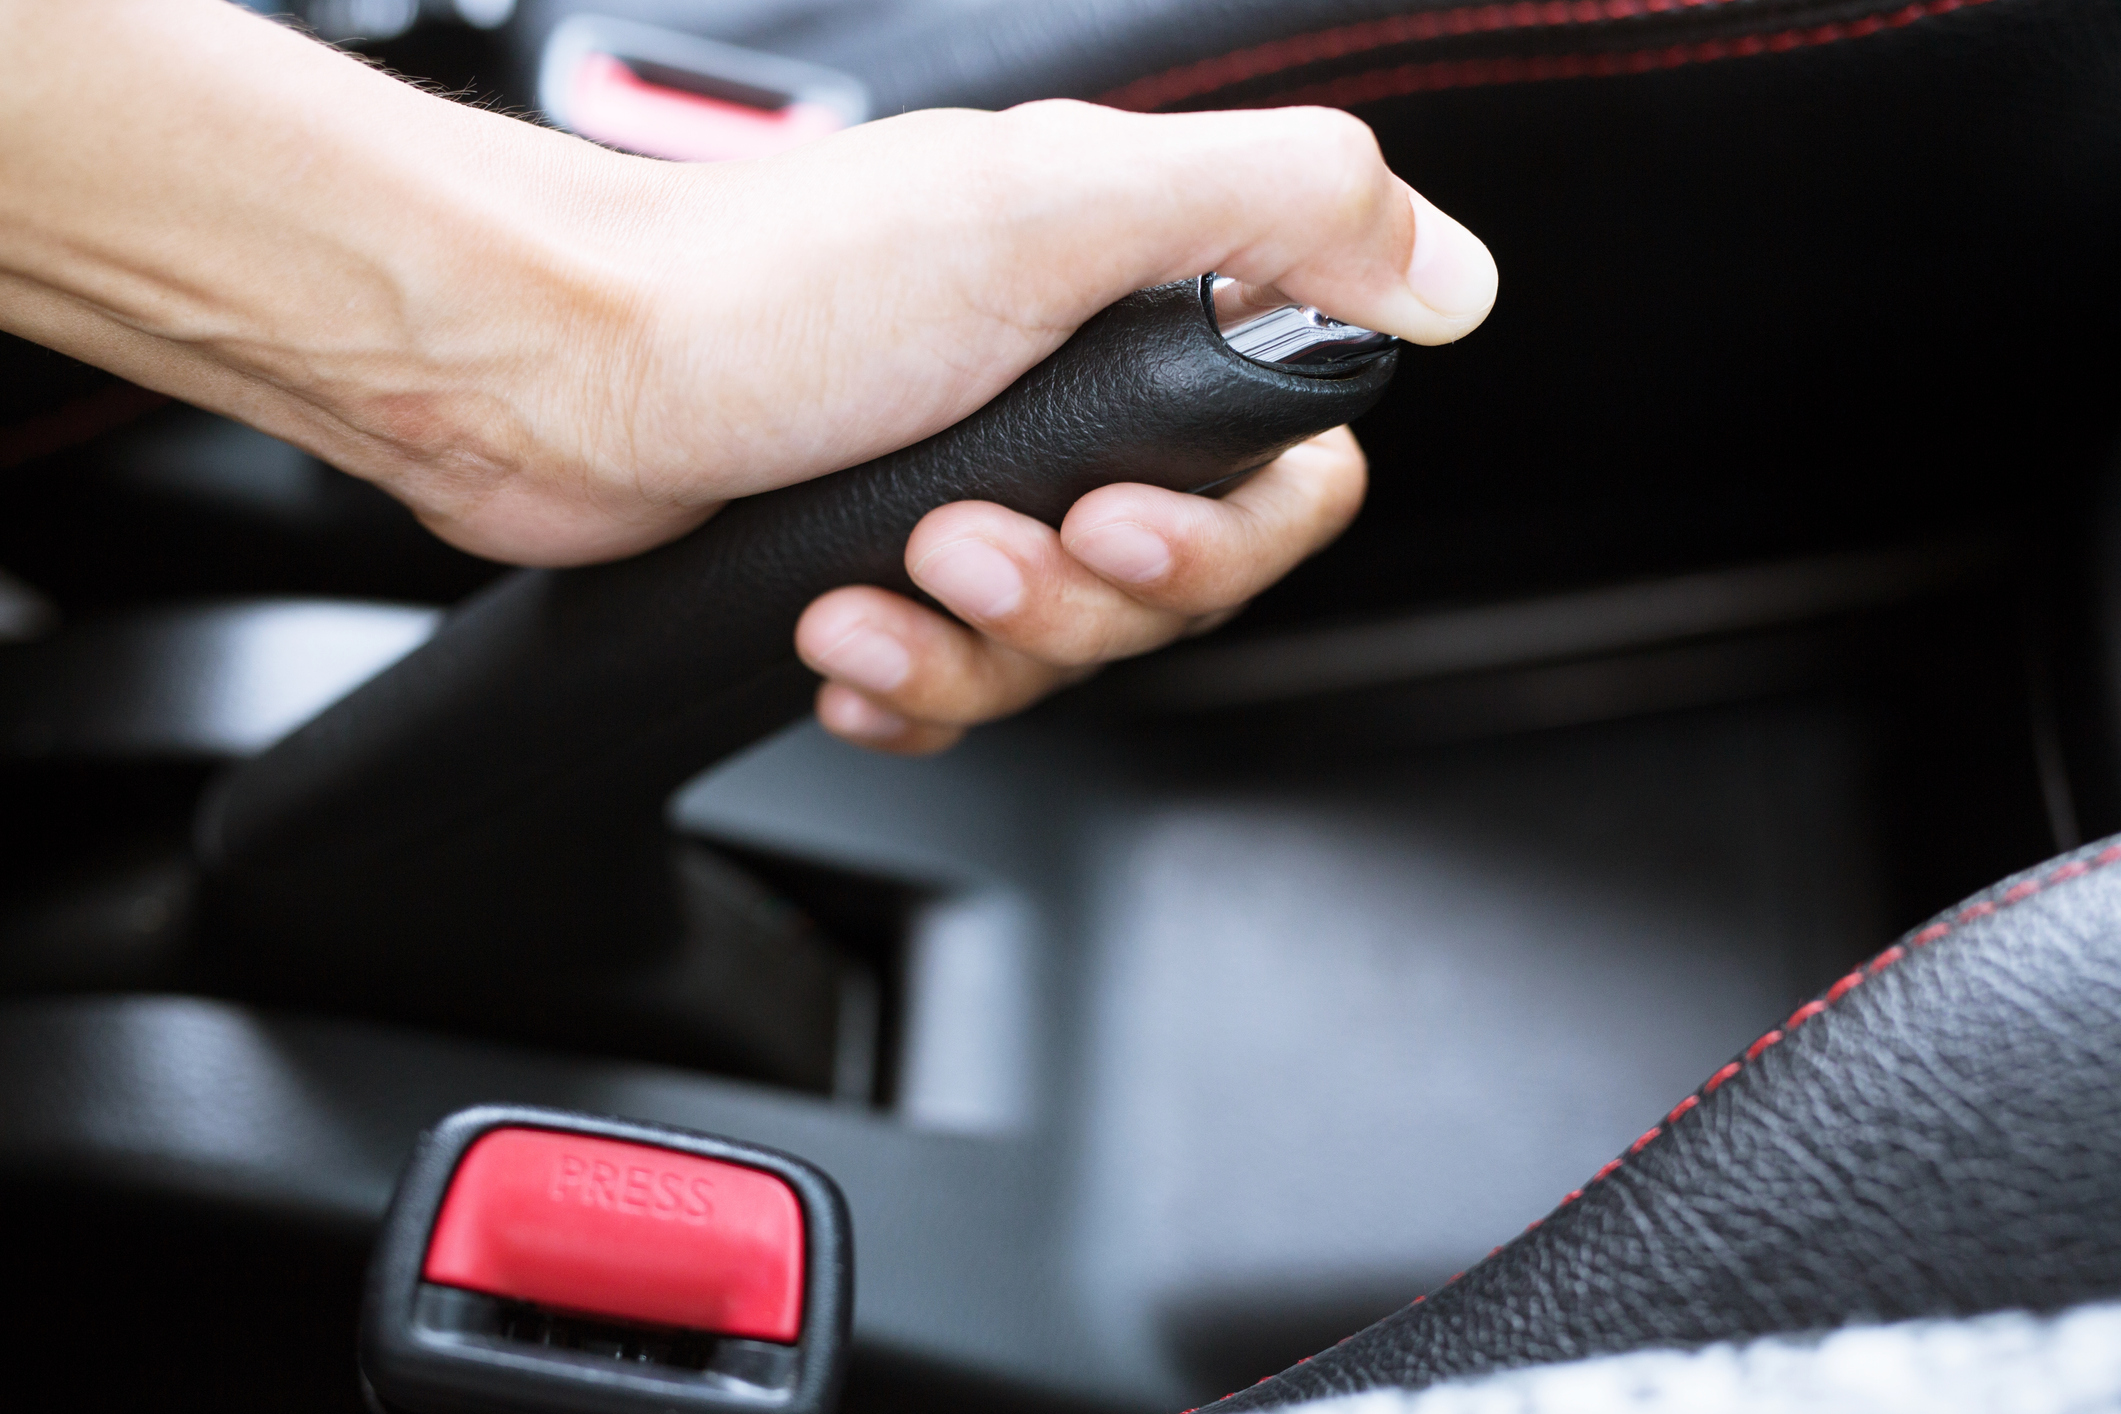 Poner el freno de mano de un carro sin oprimir el botón puede dañarlo?